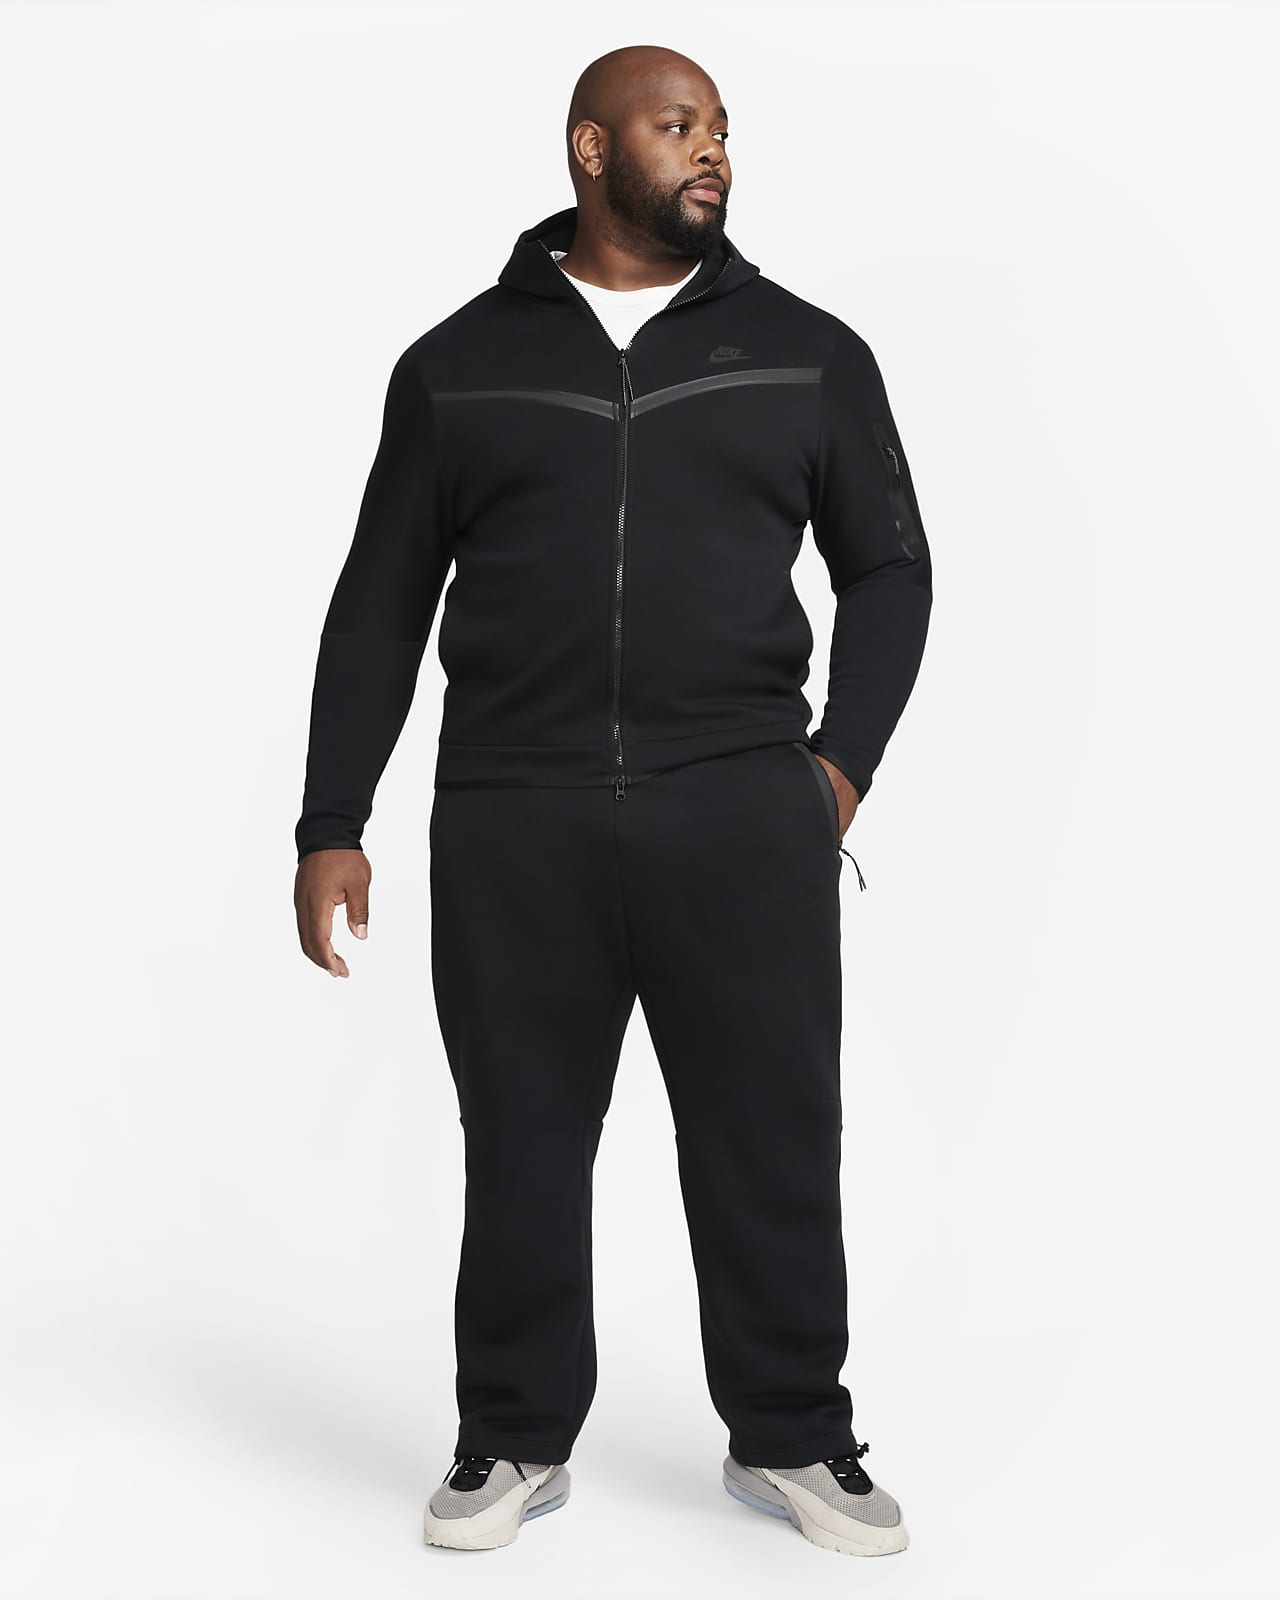 Nike Sportswear Tech Fleece Open-Hem Sweatpants 'Medium Olive/Black' -  FB8012-222